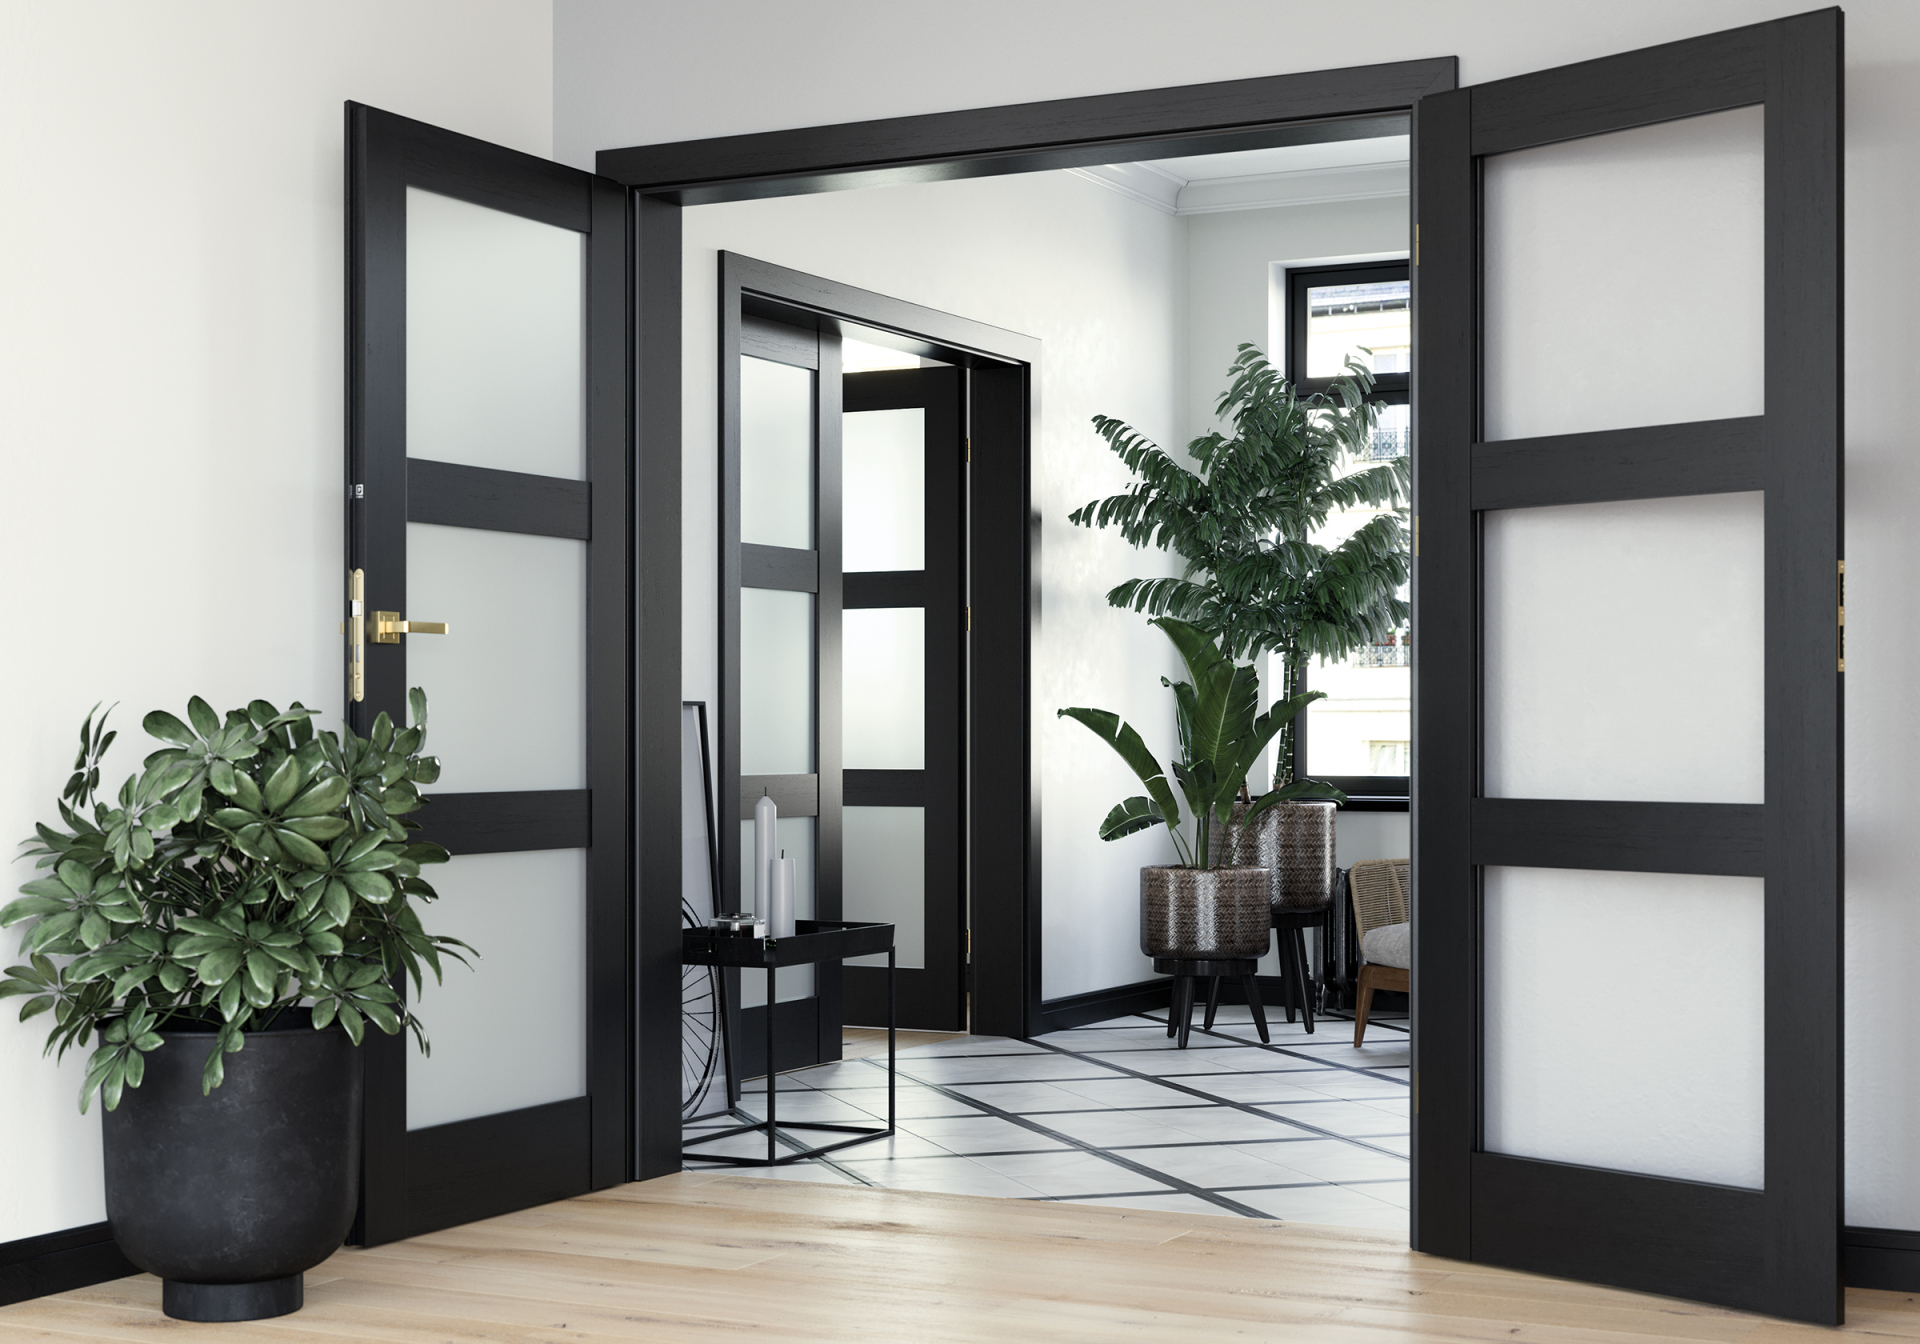 Dvoukřídlé dveře jsou elegantní řešení pro nestandardní prostory